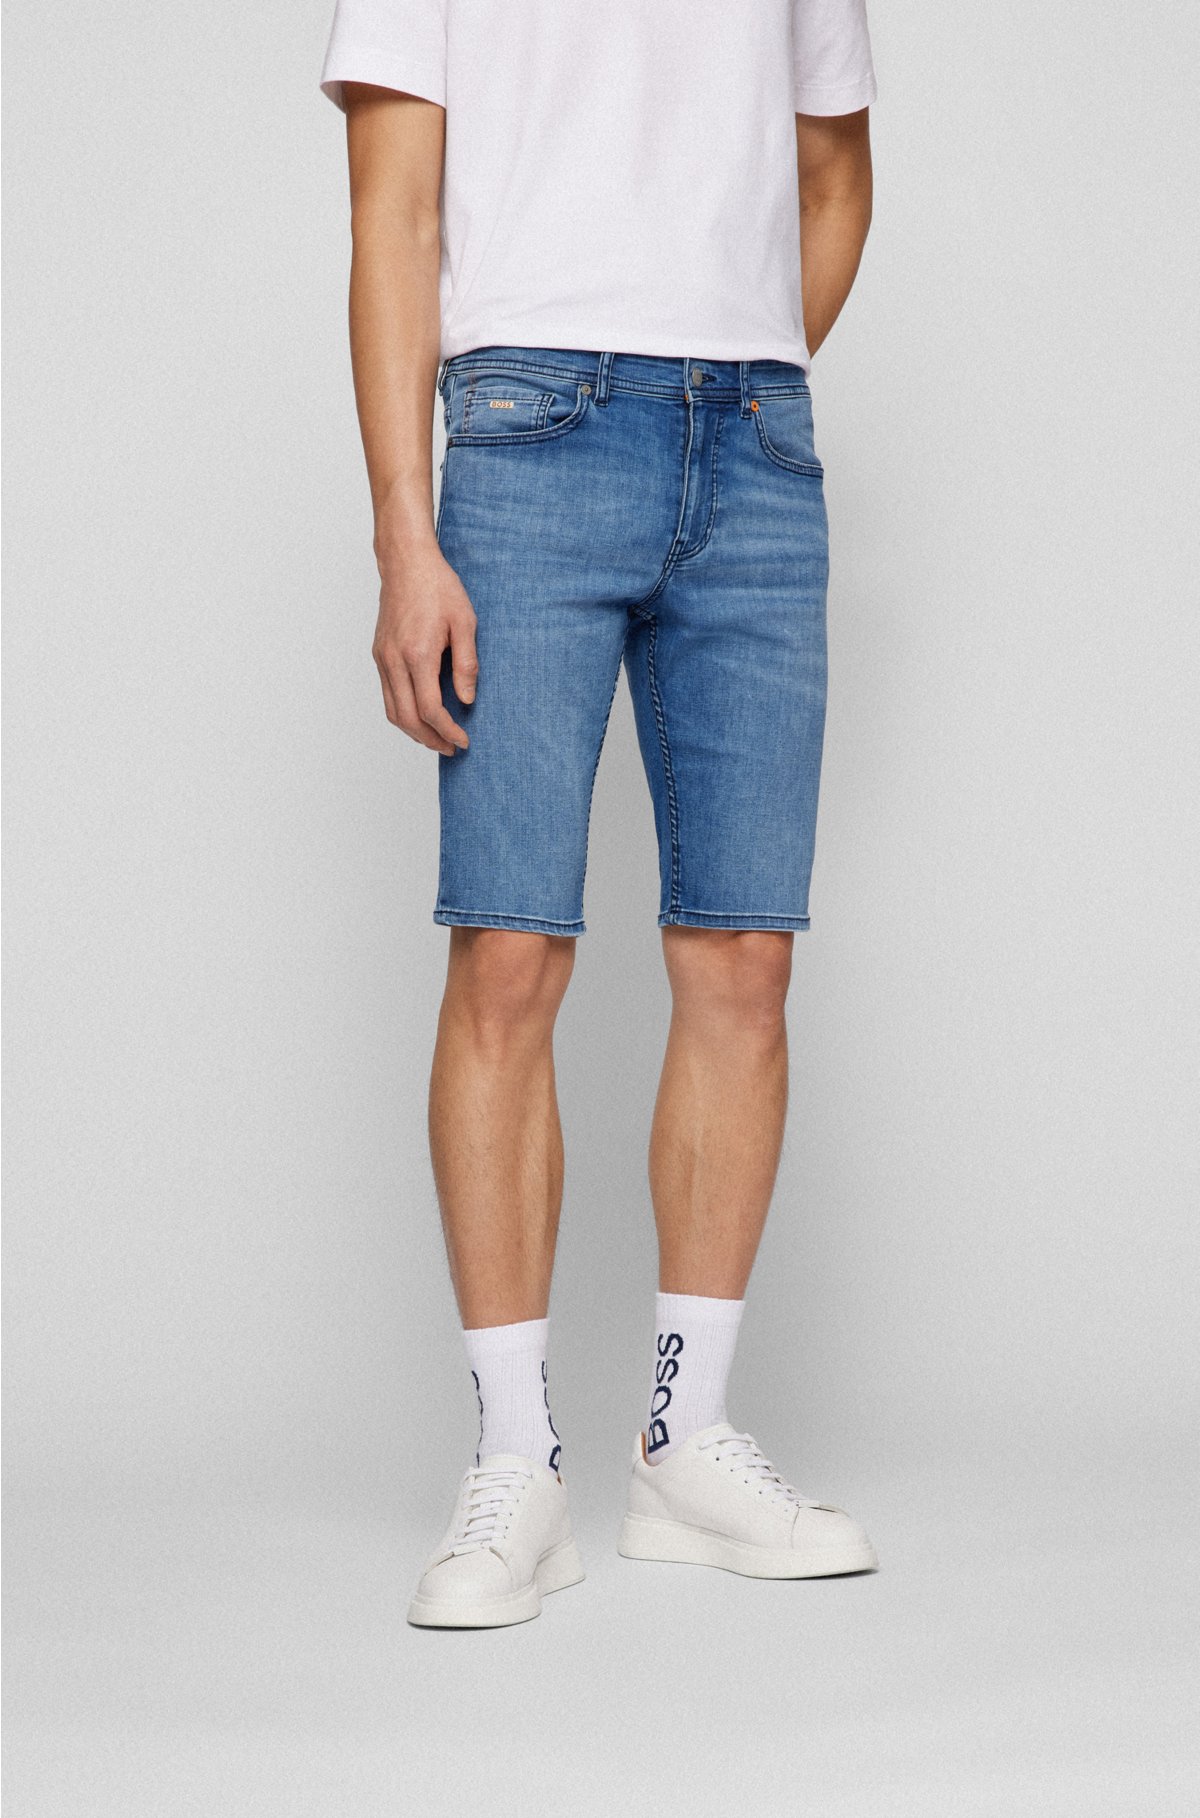 BOSS - Tapered-fit shorts in blue super-stretch denim